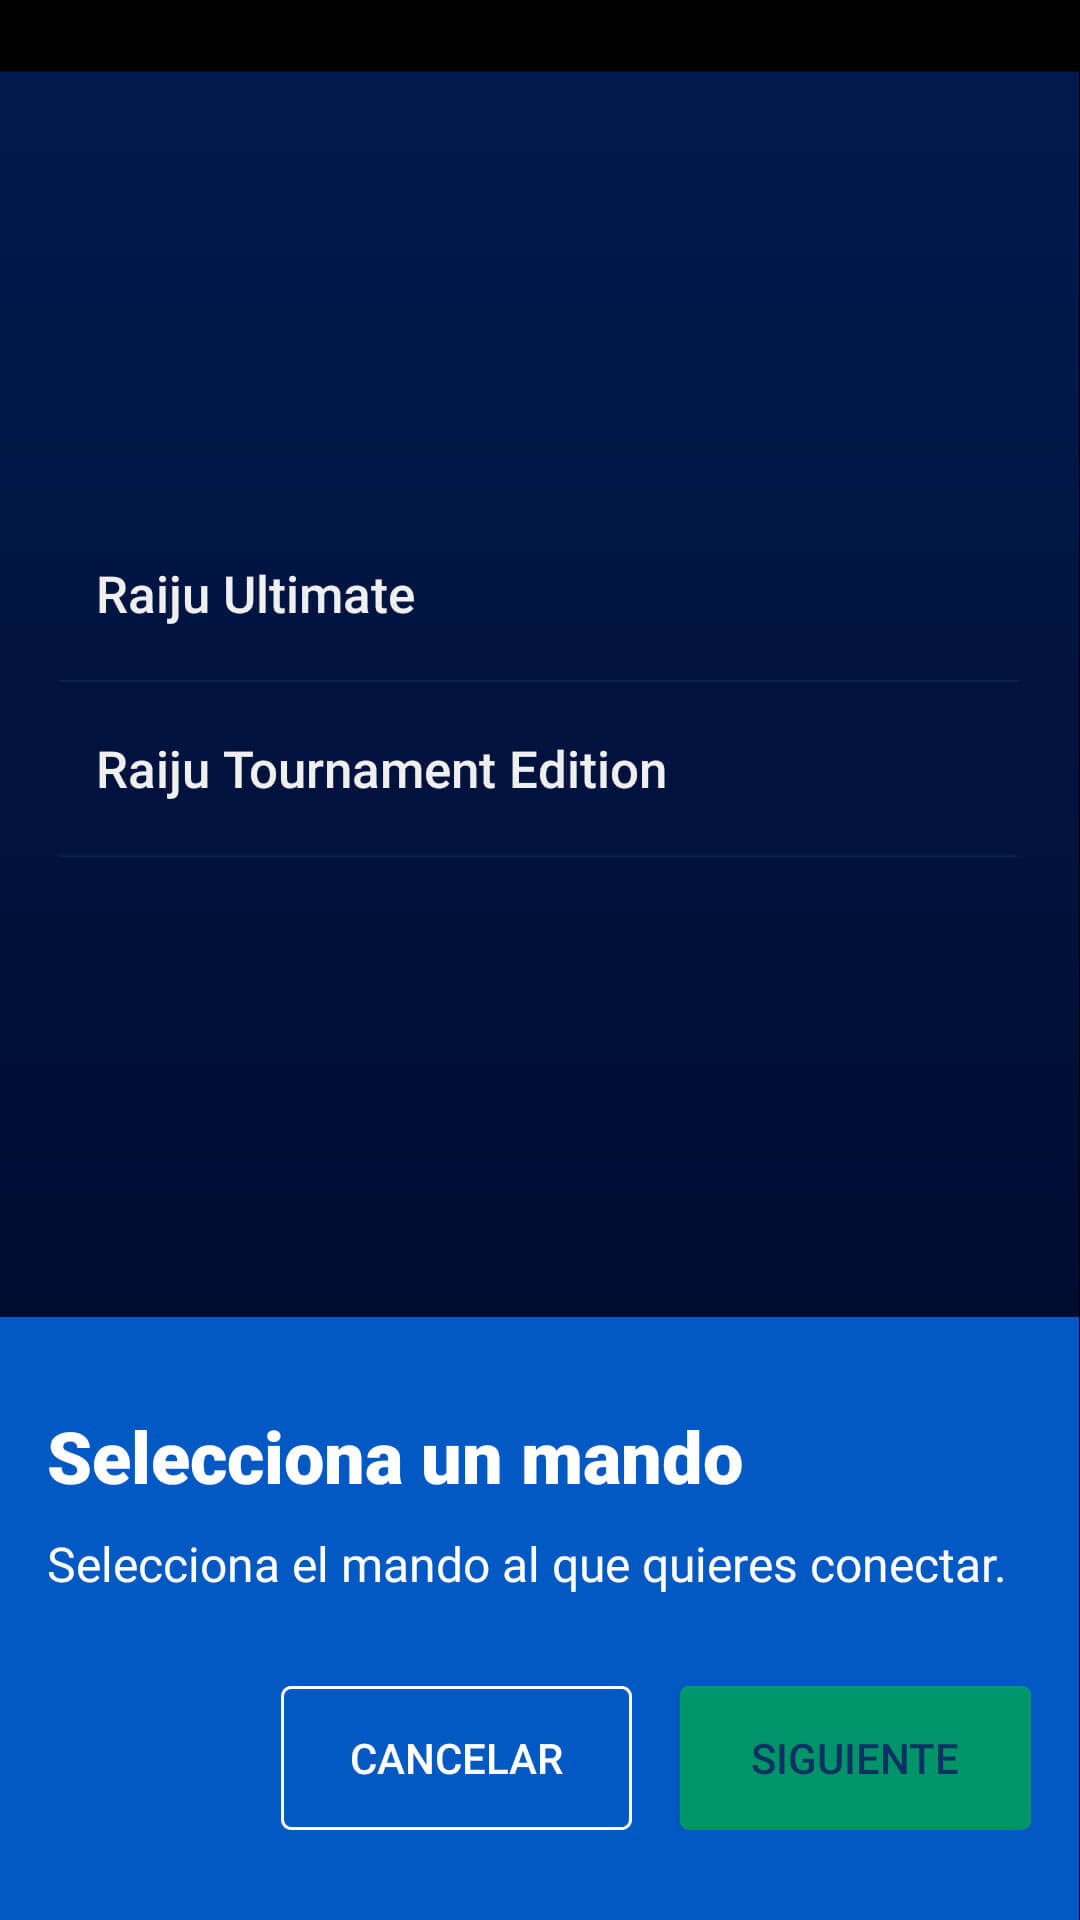 Razer Raiju Ultimate